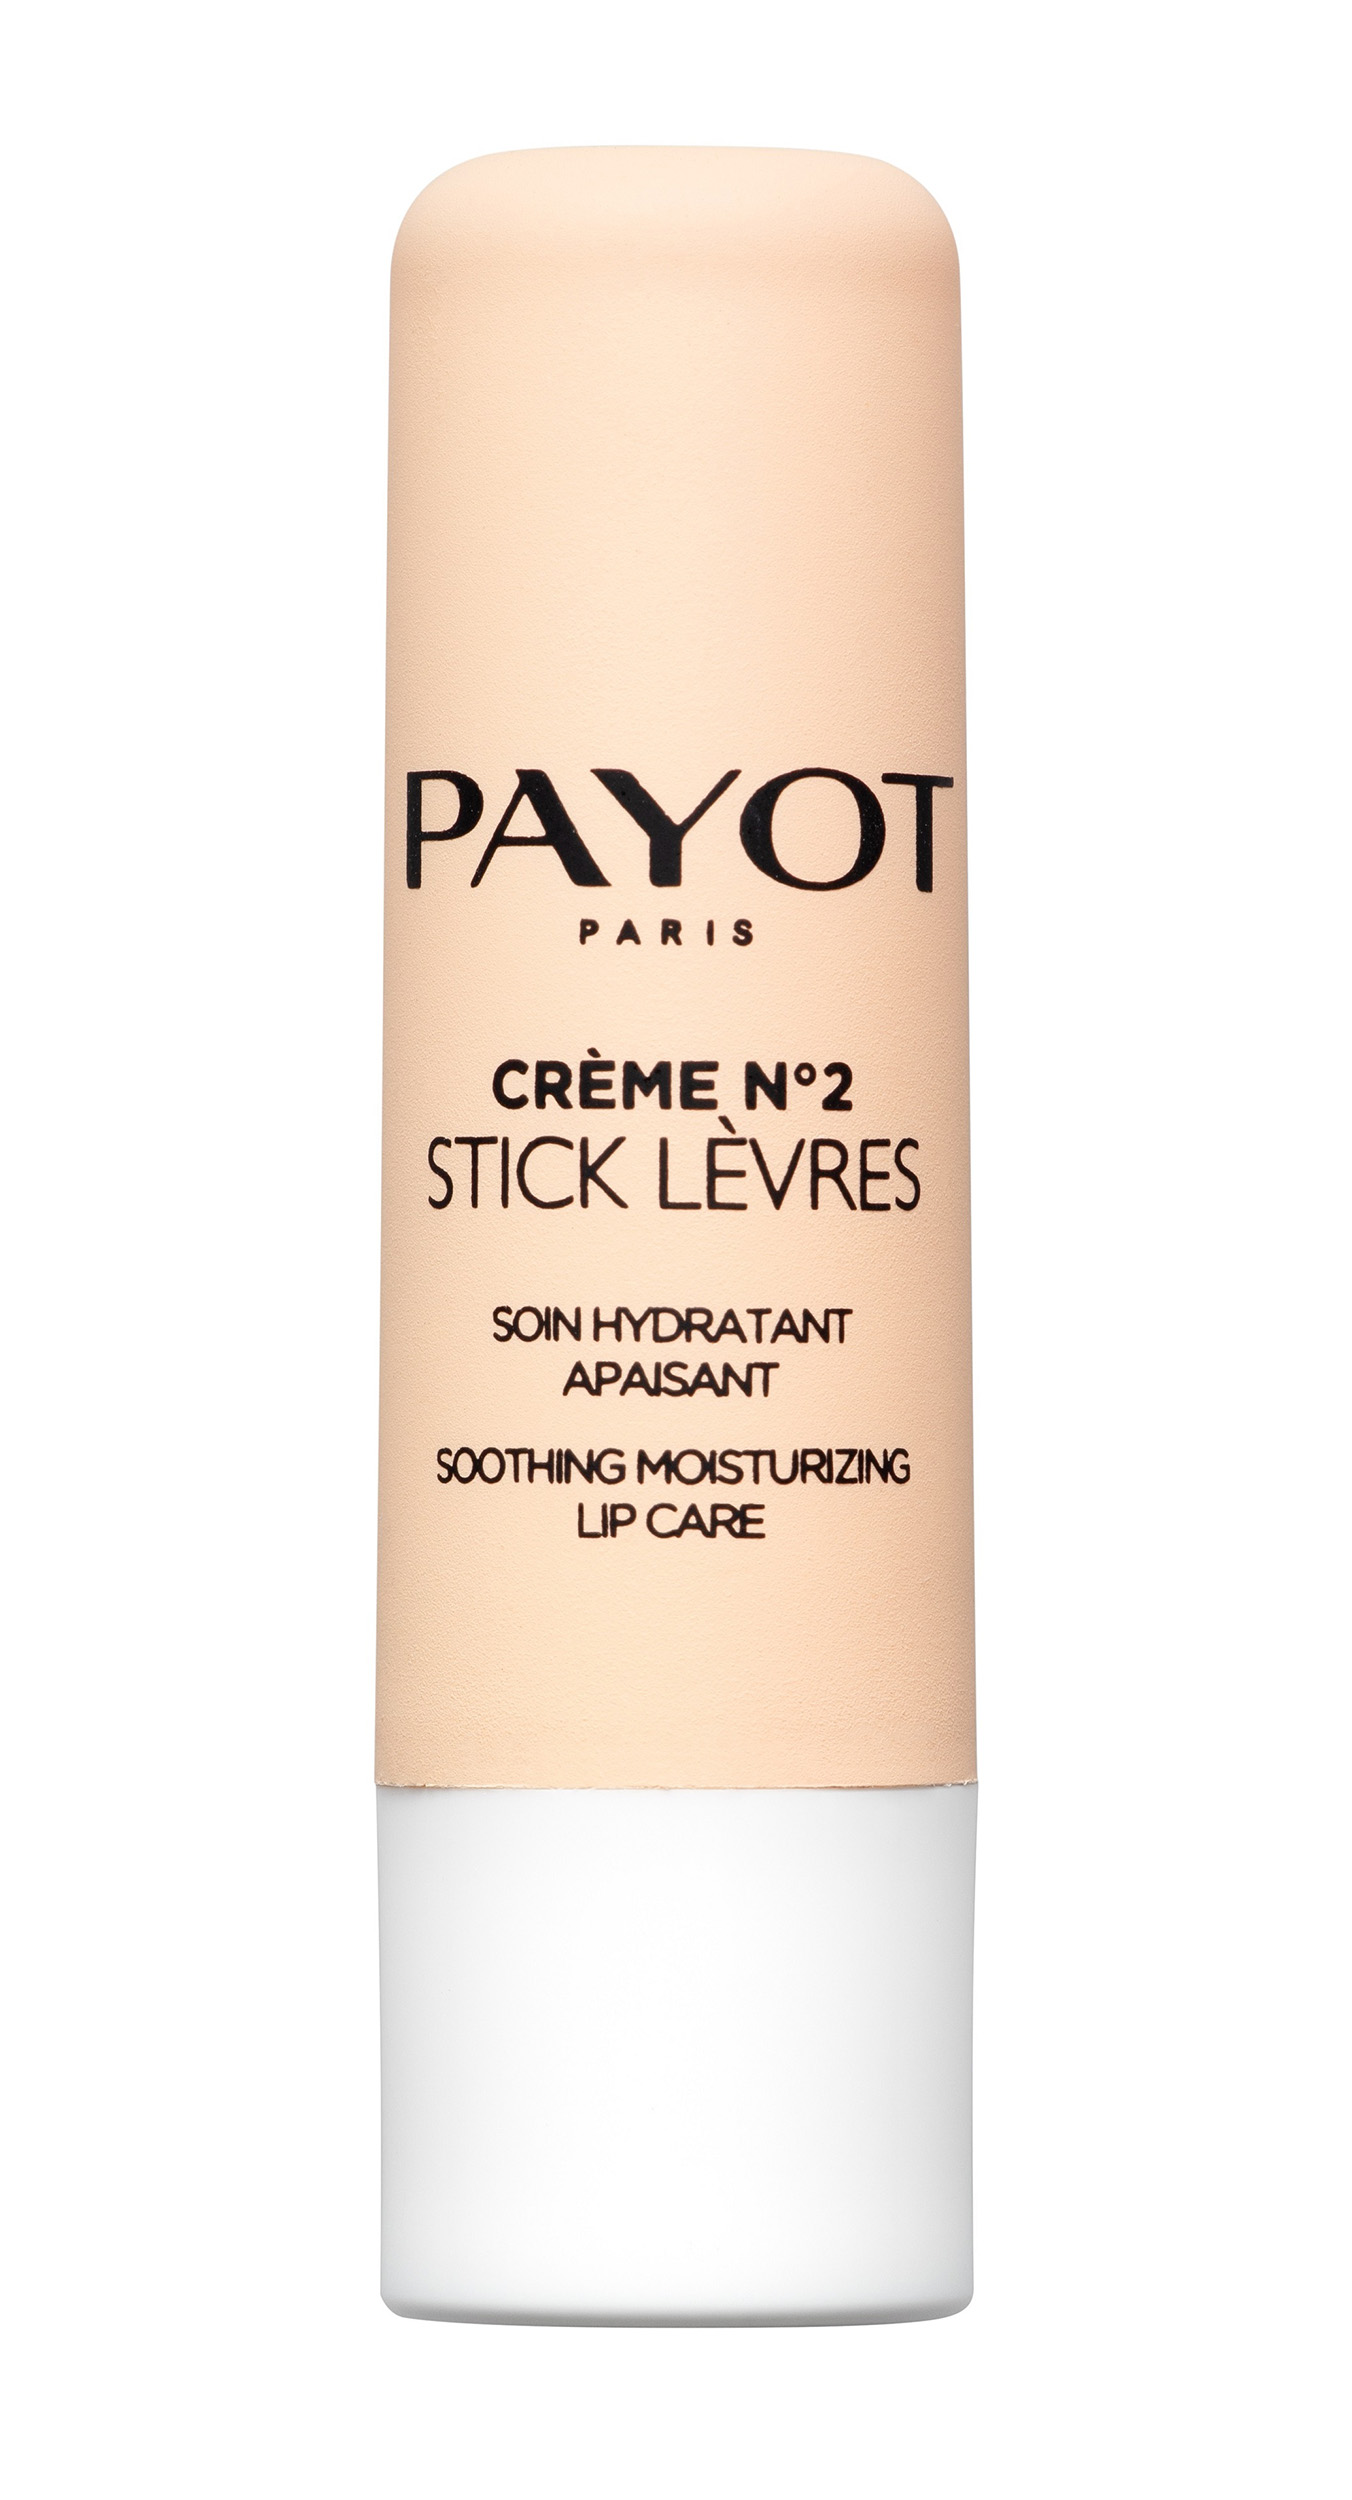 Payot Бальзам увлажняющий и успокаивающий кожу губ Stick Levres, 4 г (Payot, CREME N2)